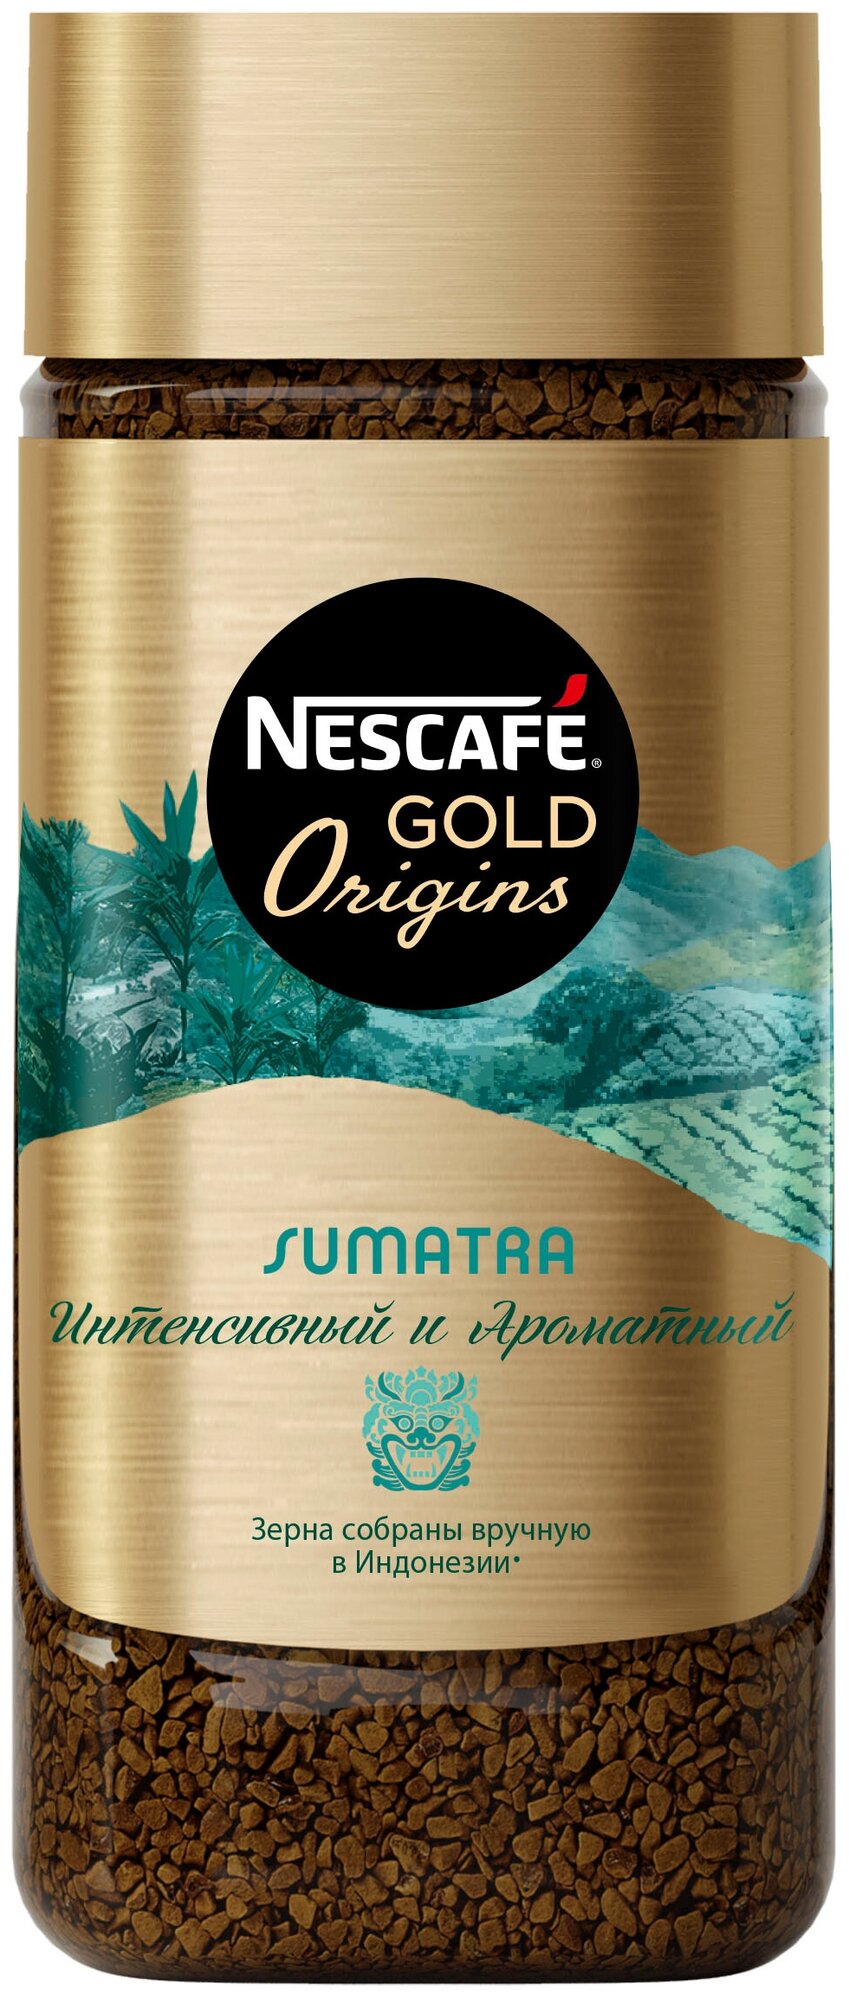 NESCAFÉ GOLD Origins Sumatra, кофе растворимый, 170г, стеклянная банка